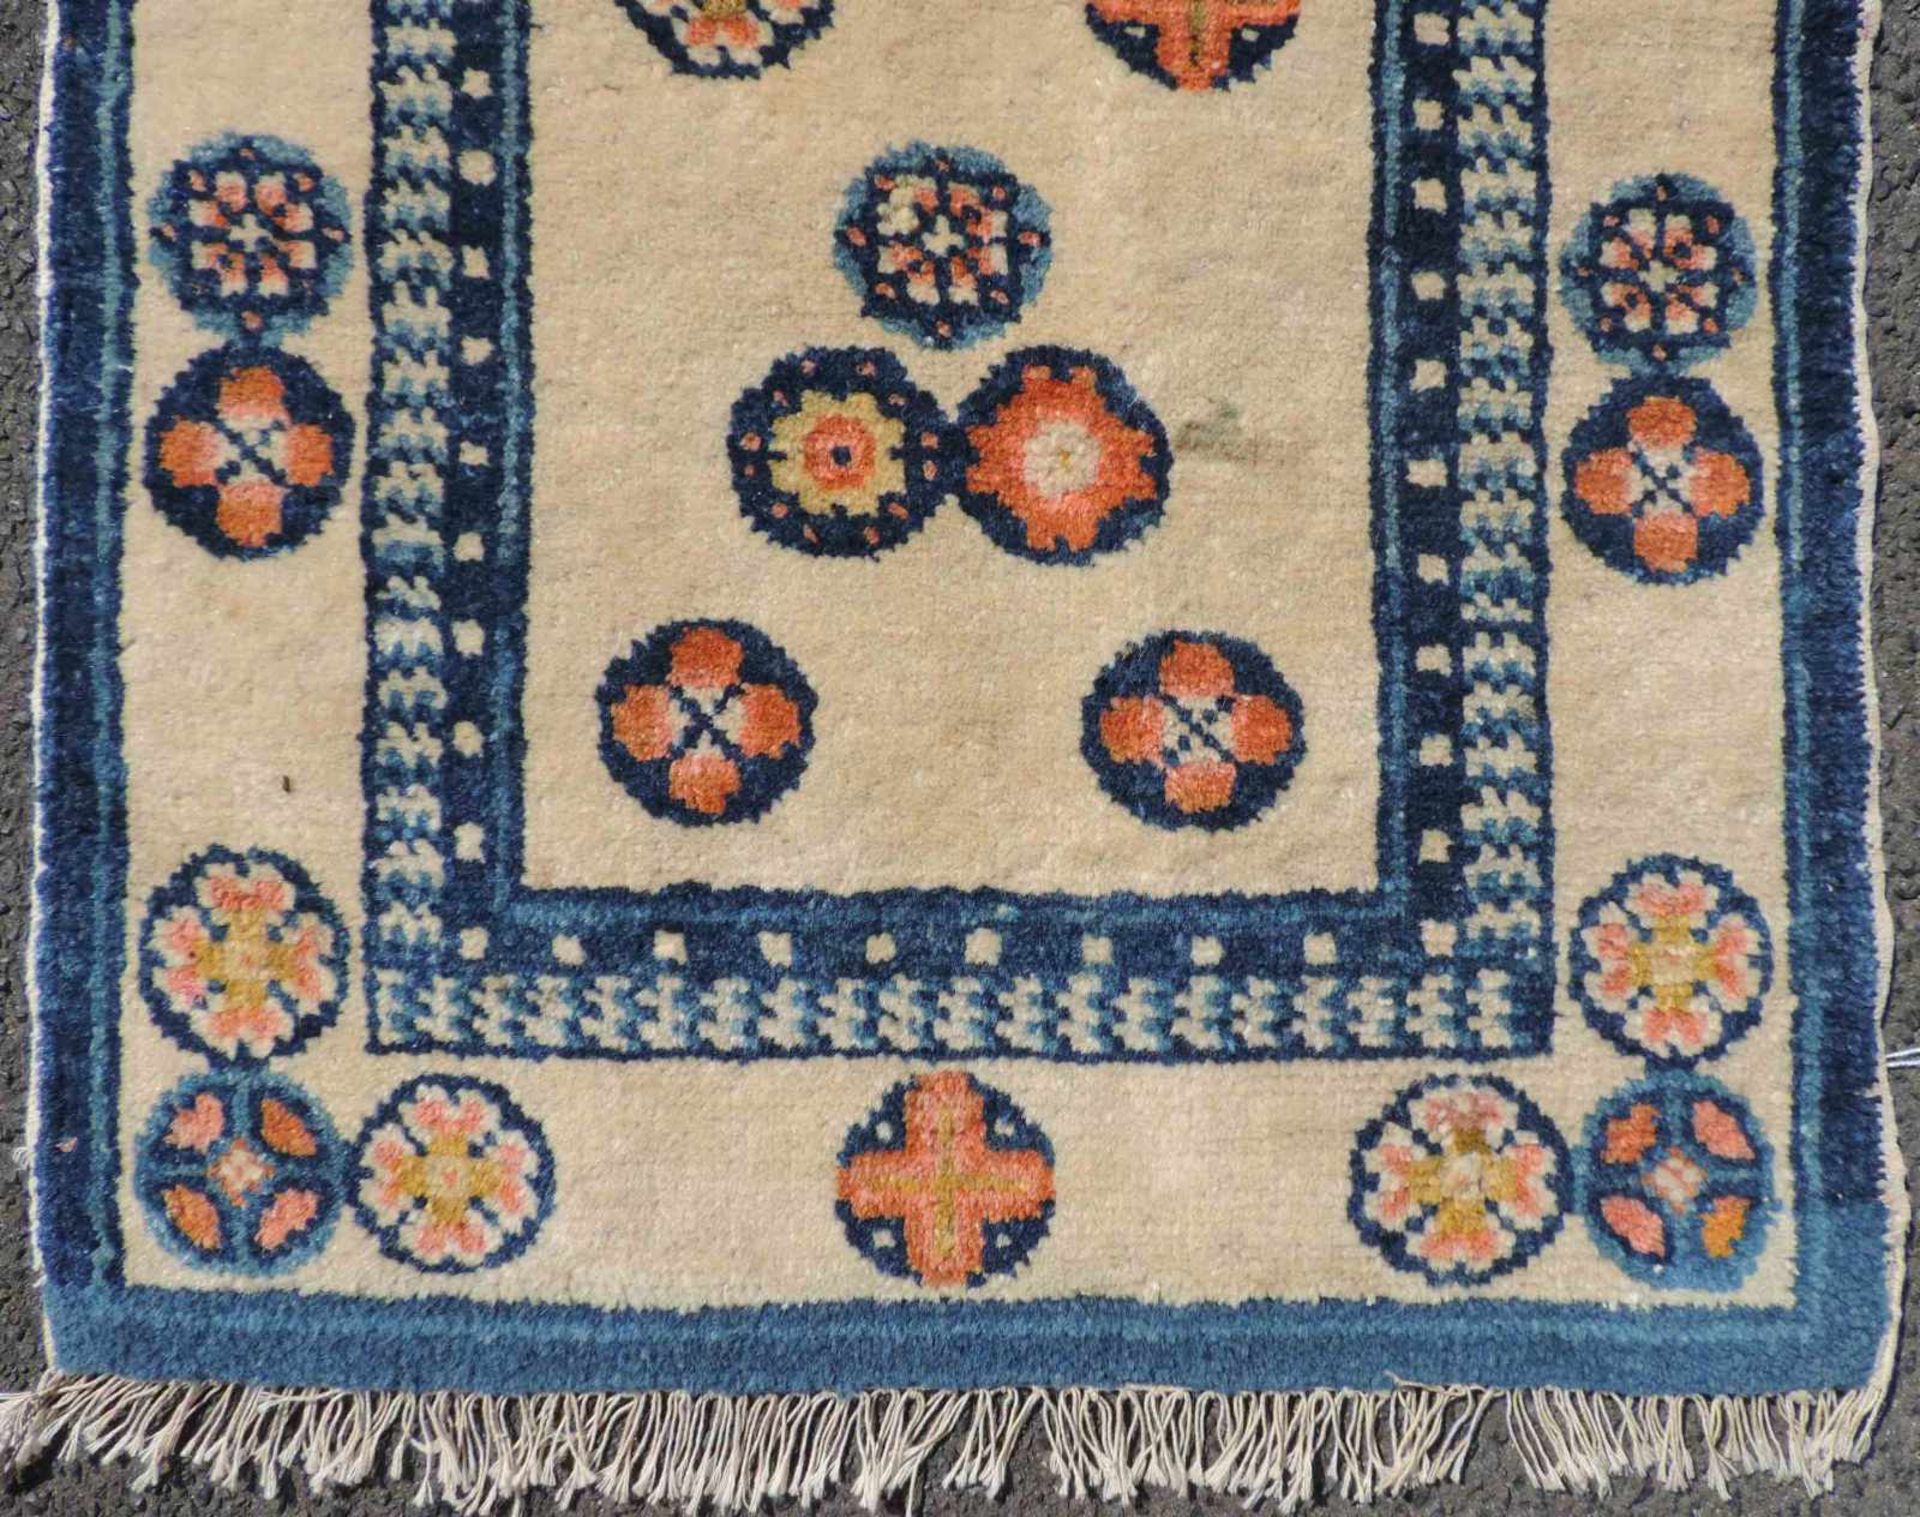 Pau Tou Meditationsteppich. China, antik, um 1900. 87 cm x 50 cm. Handgeknüpft, Wolle auf Baumwolle. - Bild 2 aus 4